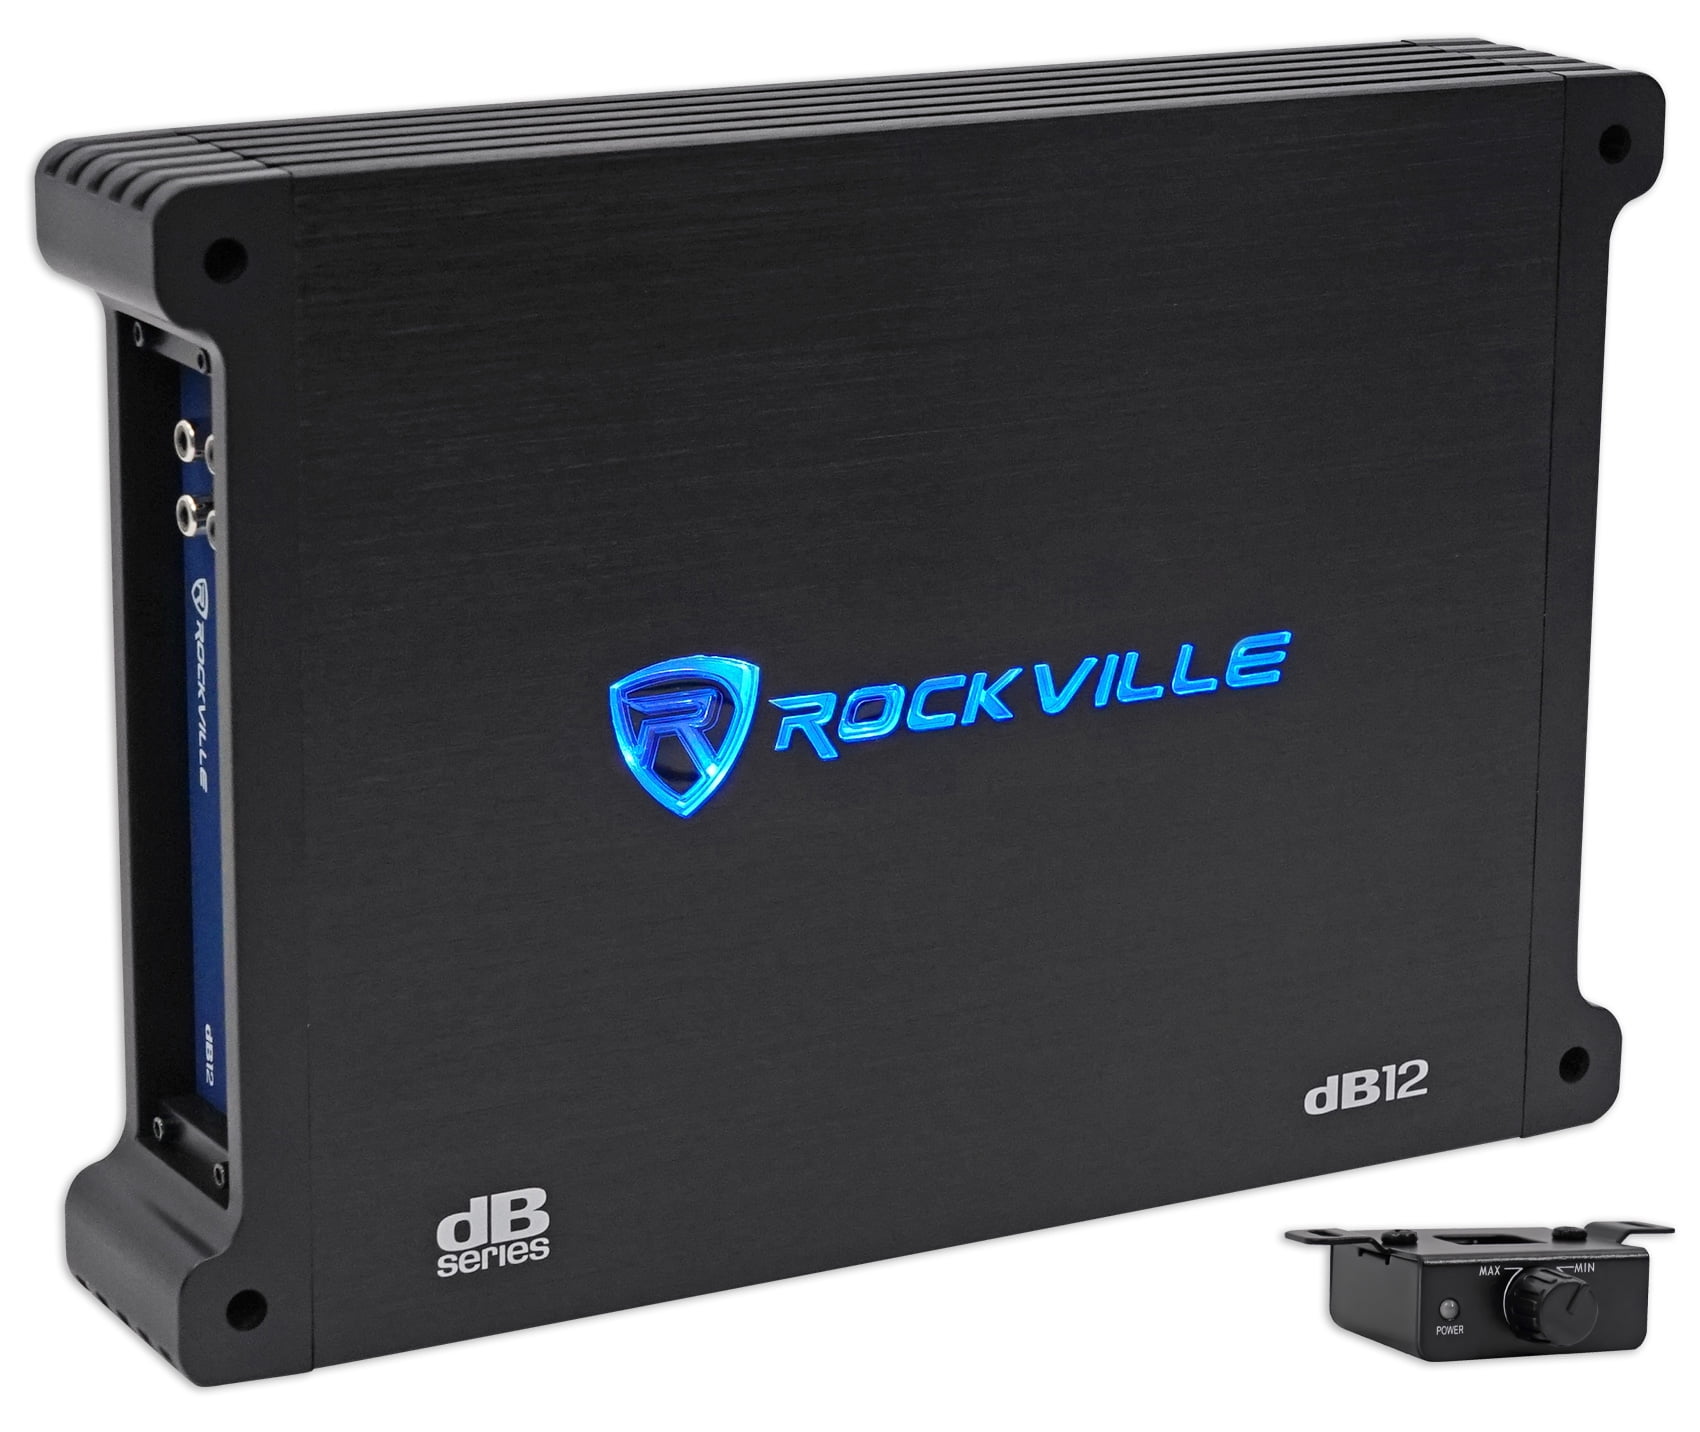 Details about   Rockville RXA-T2 2400 Watt Peak/625w RMS 2 Channel Amplifier Car Stereo Amp 